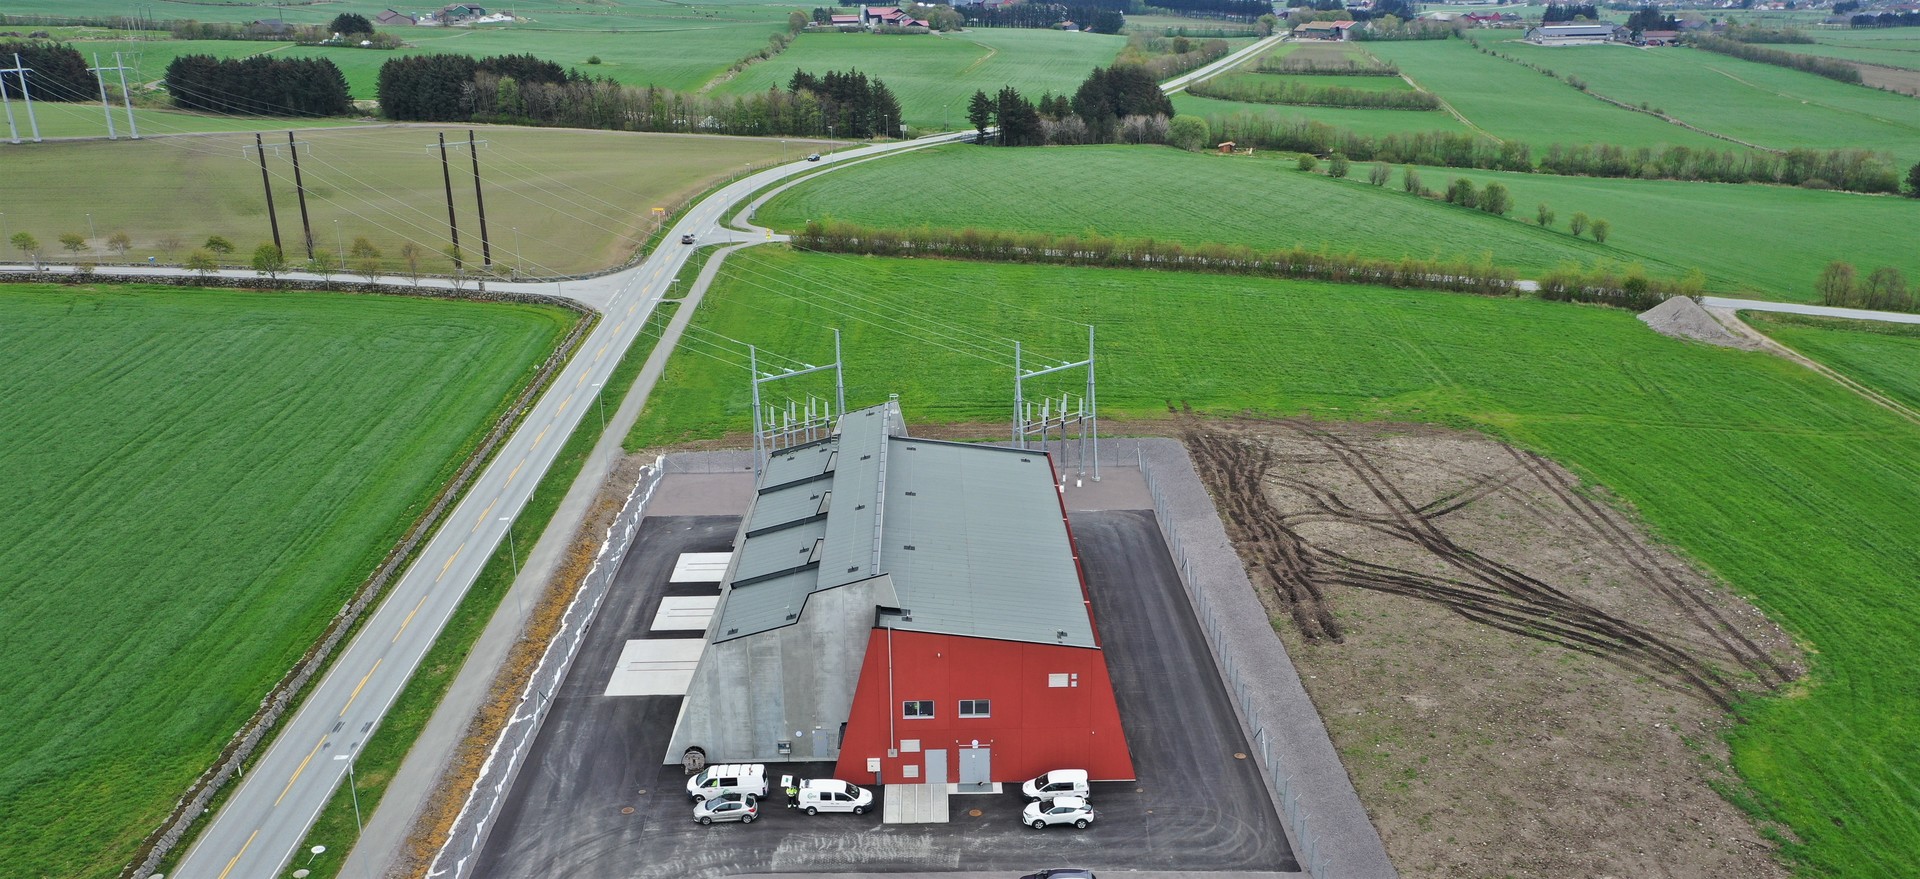 Dronefoto av nye Opstad transformatorstasjon med grønne marker omkring